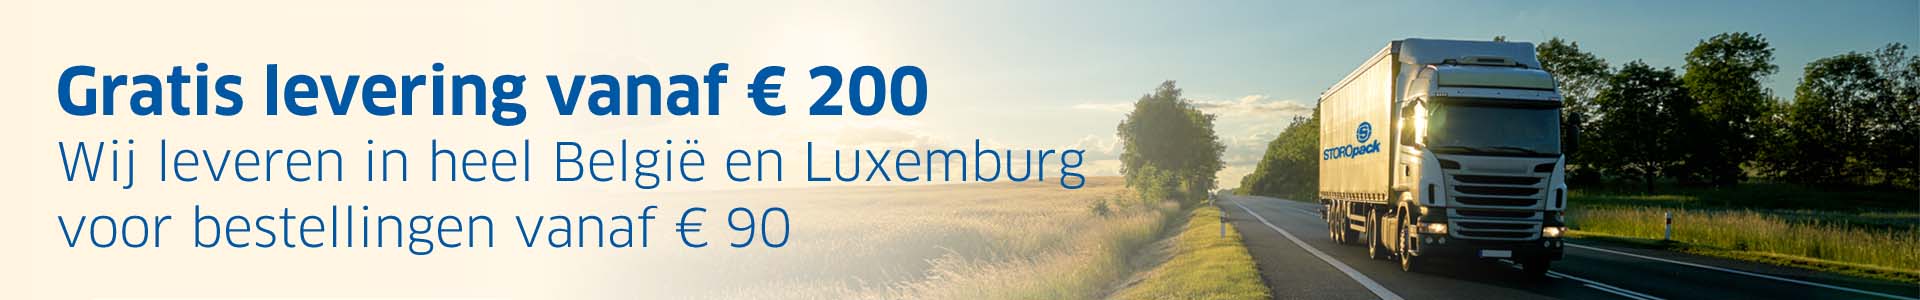 Gratis levering vanaf € 200. Wij leveren in heel België en Luxemburg voor bestellingen vanaf € 90.